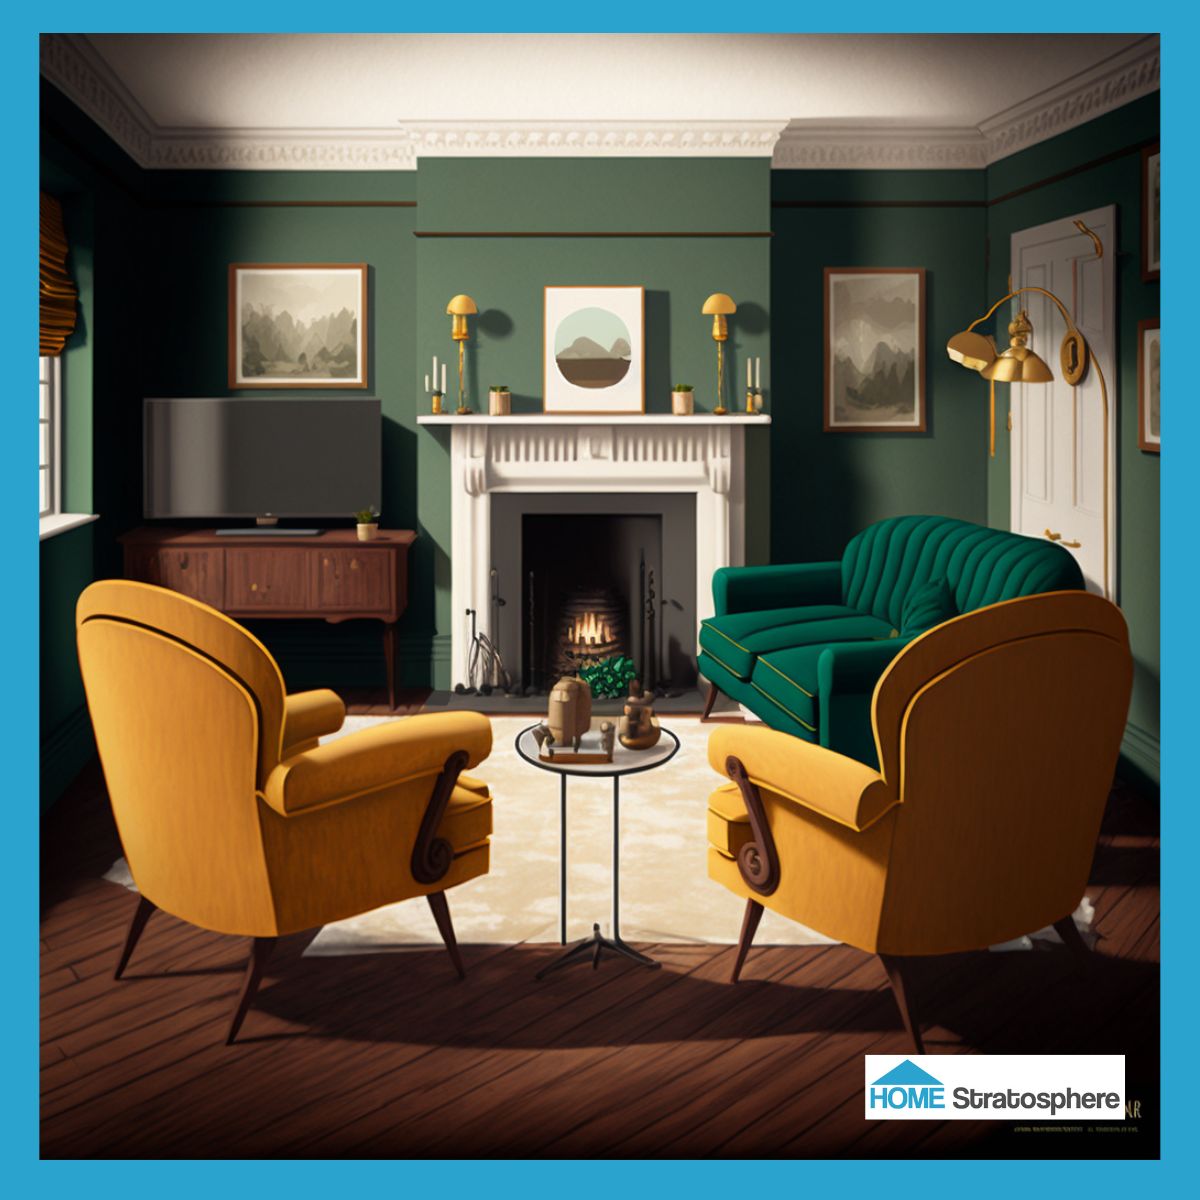 这个房间的灵感绝对来自20世纪50年代，但硬木地板看起来是全新的。这个空间里也有其他现代特色，比如平板电视。我喜欢深绿色的沙发和亮黄色的椅子形成鲜明的对比。白色的皇冠造型更加突出了这些颜色!